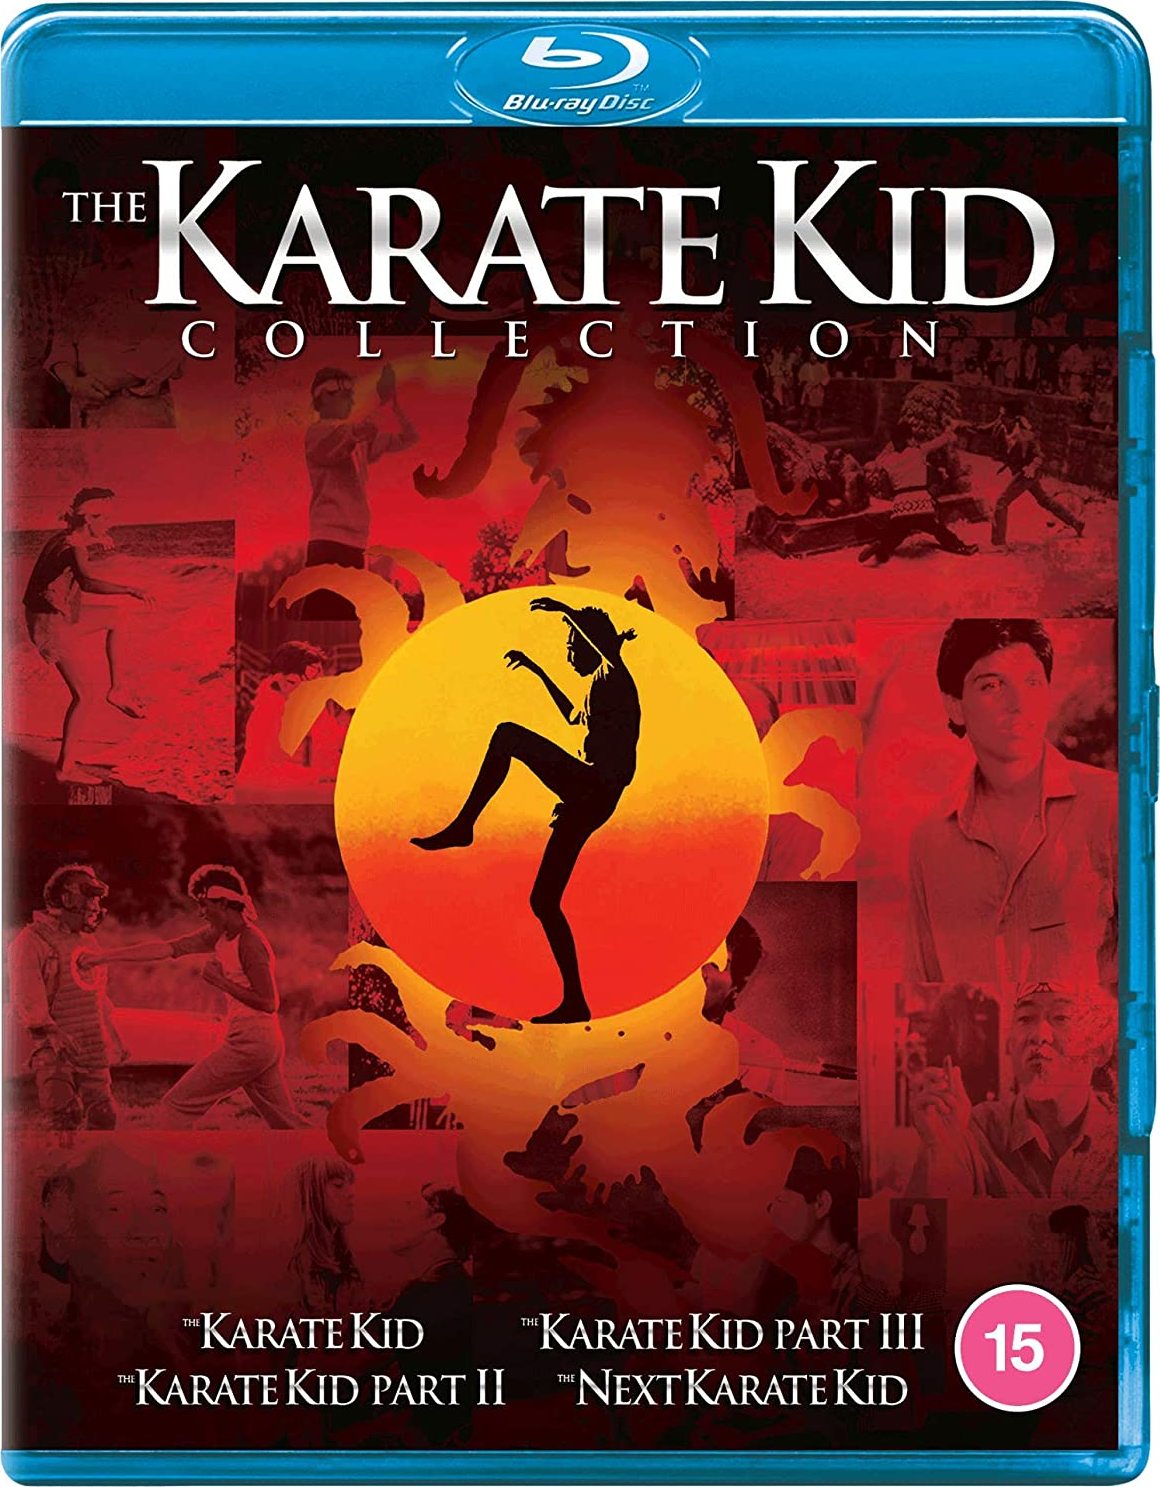 The Karate Kid Collection (1984-1994) The Karate Kid: Colección de 4 Películas (1984-1994) [E-AC3 5.1/2.0 + SRT] [Netflix]  280160_front